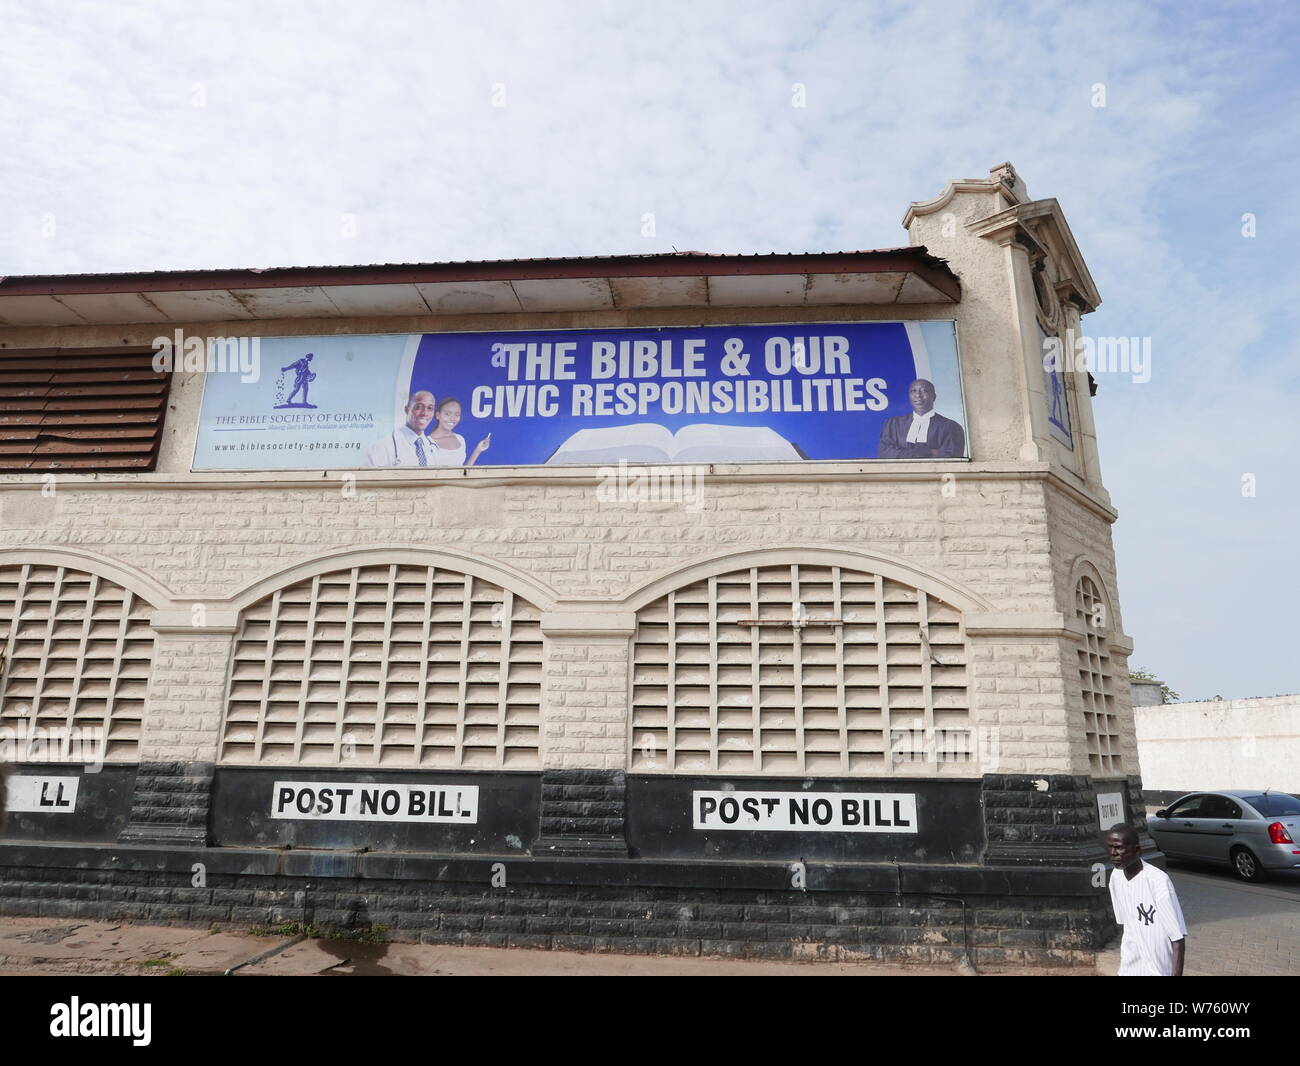 Straßenszene in Jamestown, dem wohl ältesten Stadtteil von Accra (Ghana) im August 2018. Auf dem Haus steht der der Hinweis 'The Bible & our civic Responsibility' sowie der Hinweis 'Post no bill'. | usage worldwide Stock Photo